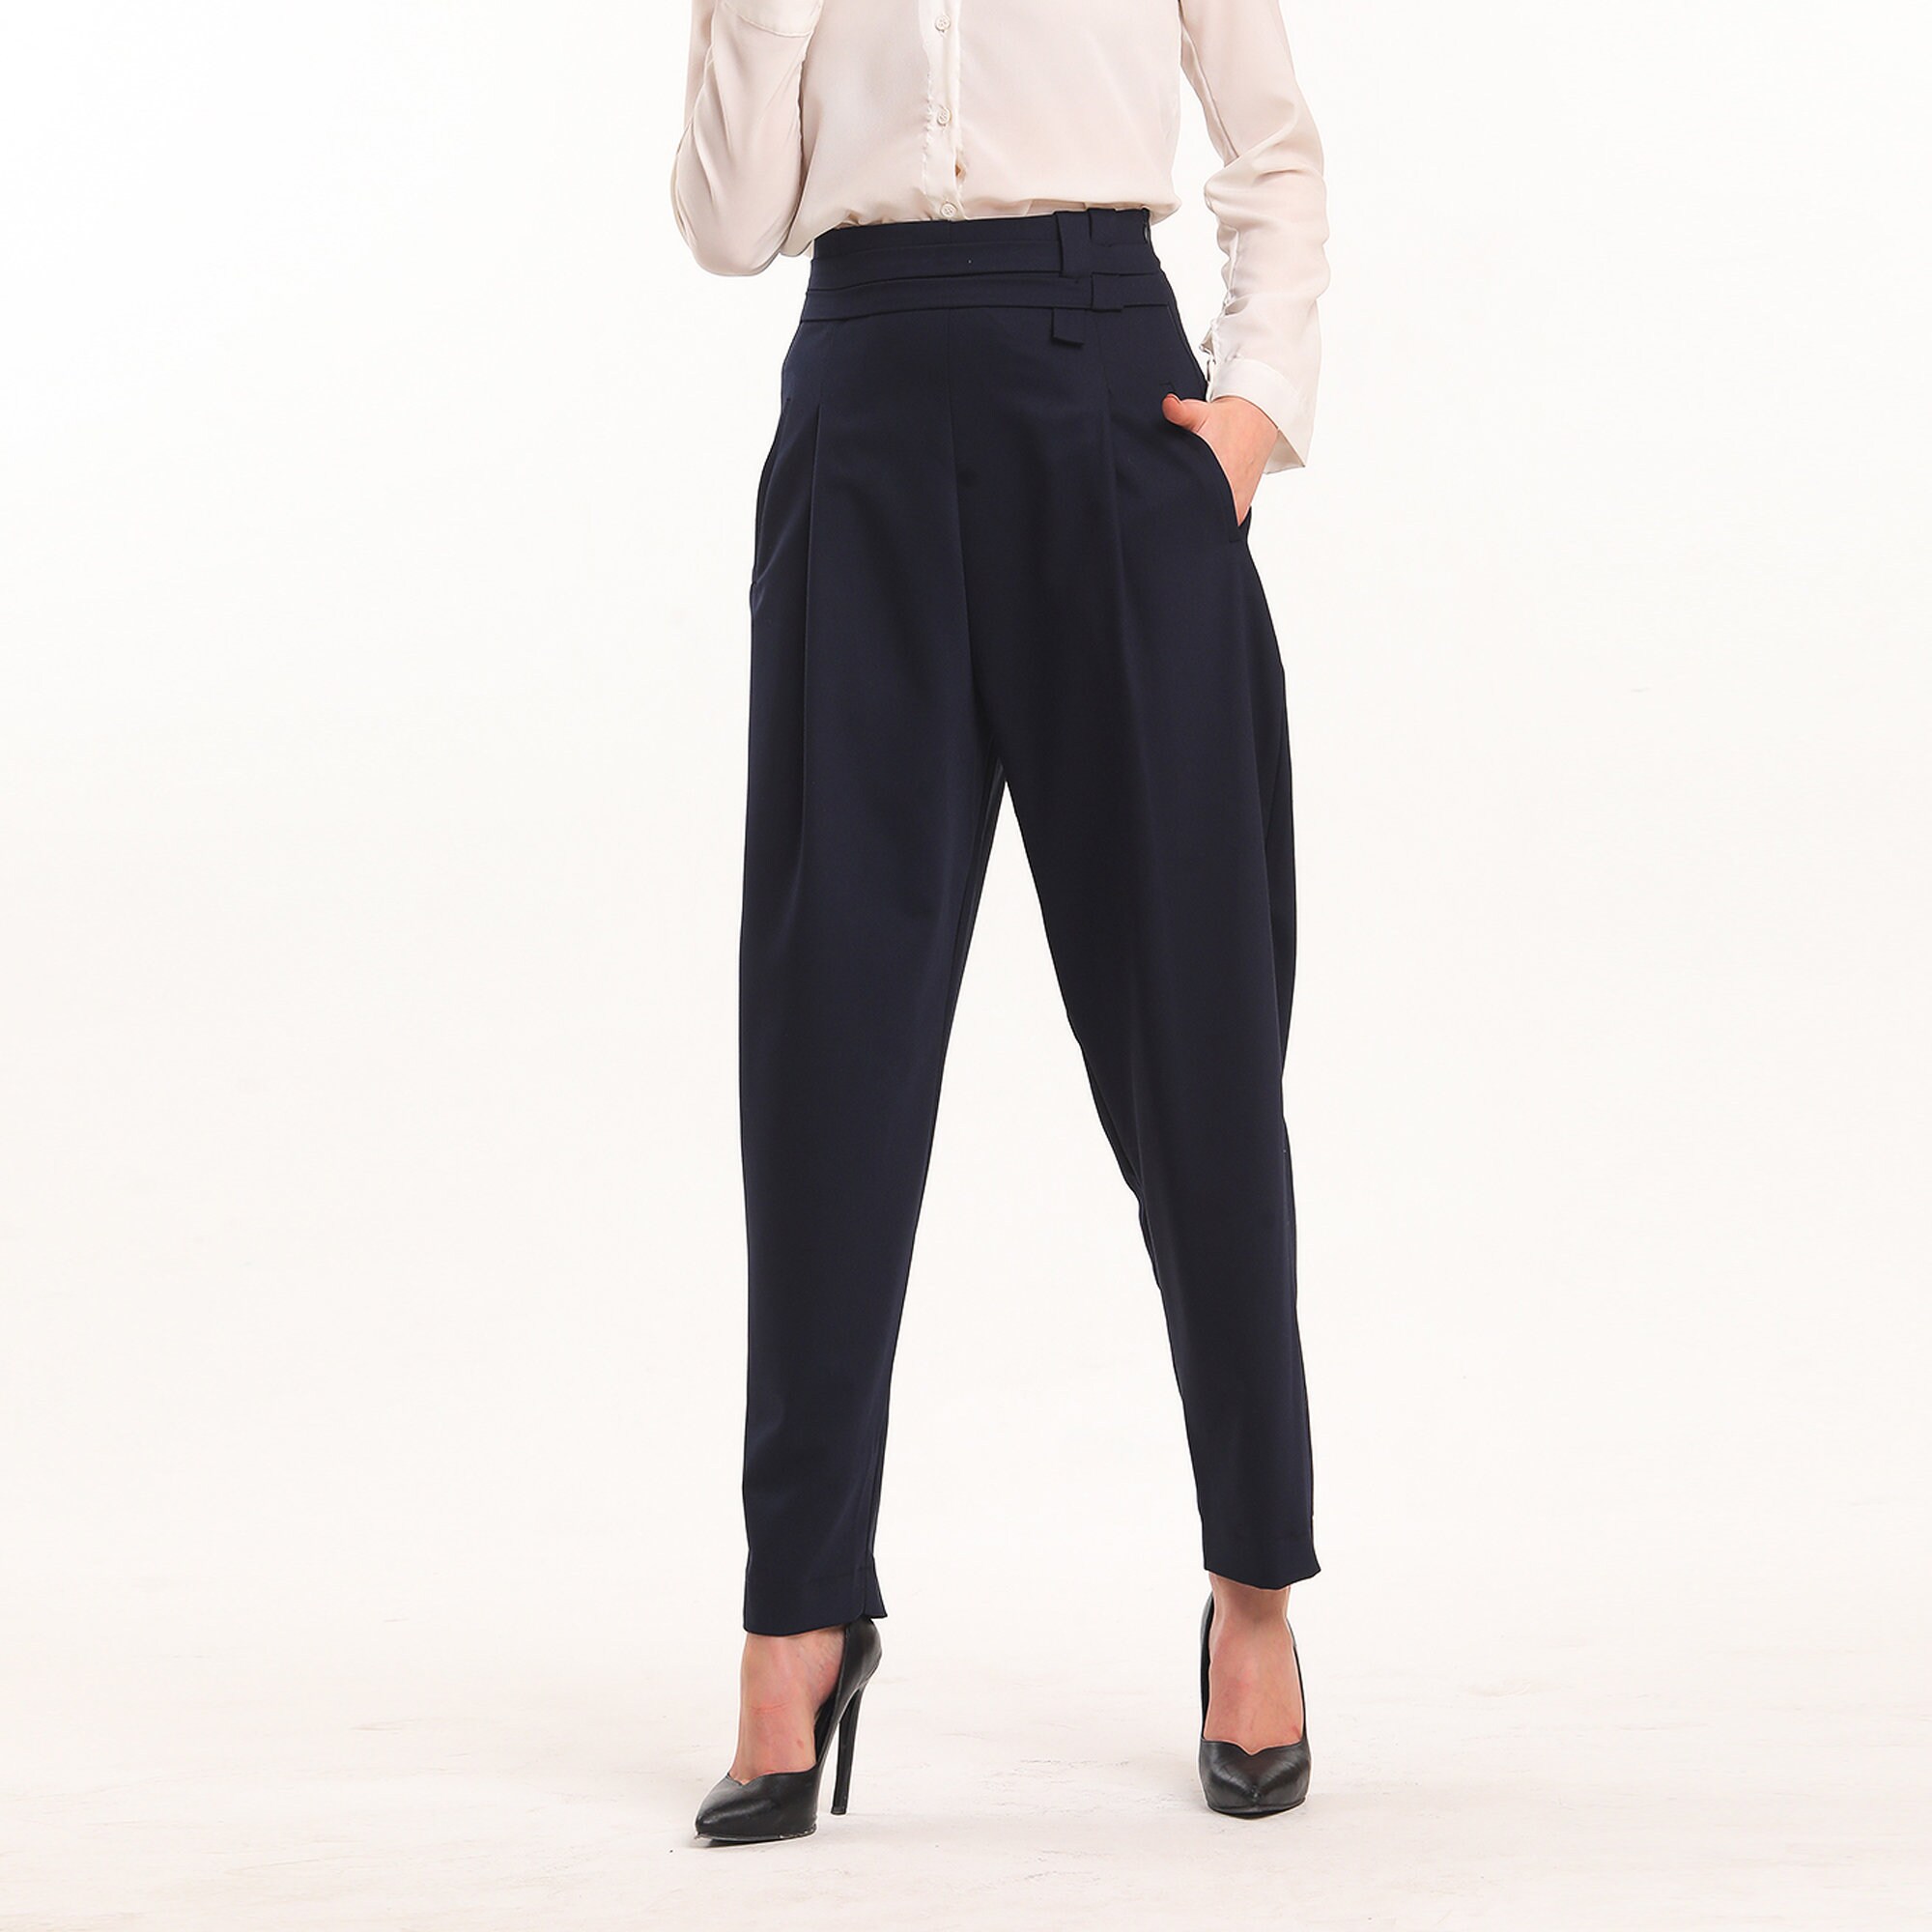  Uillui Formal Suit Pants for Women High Waist Slim Fit